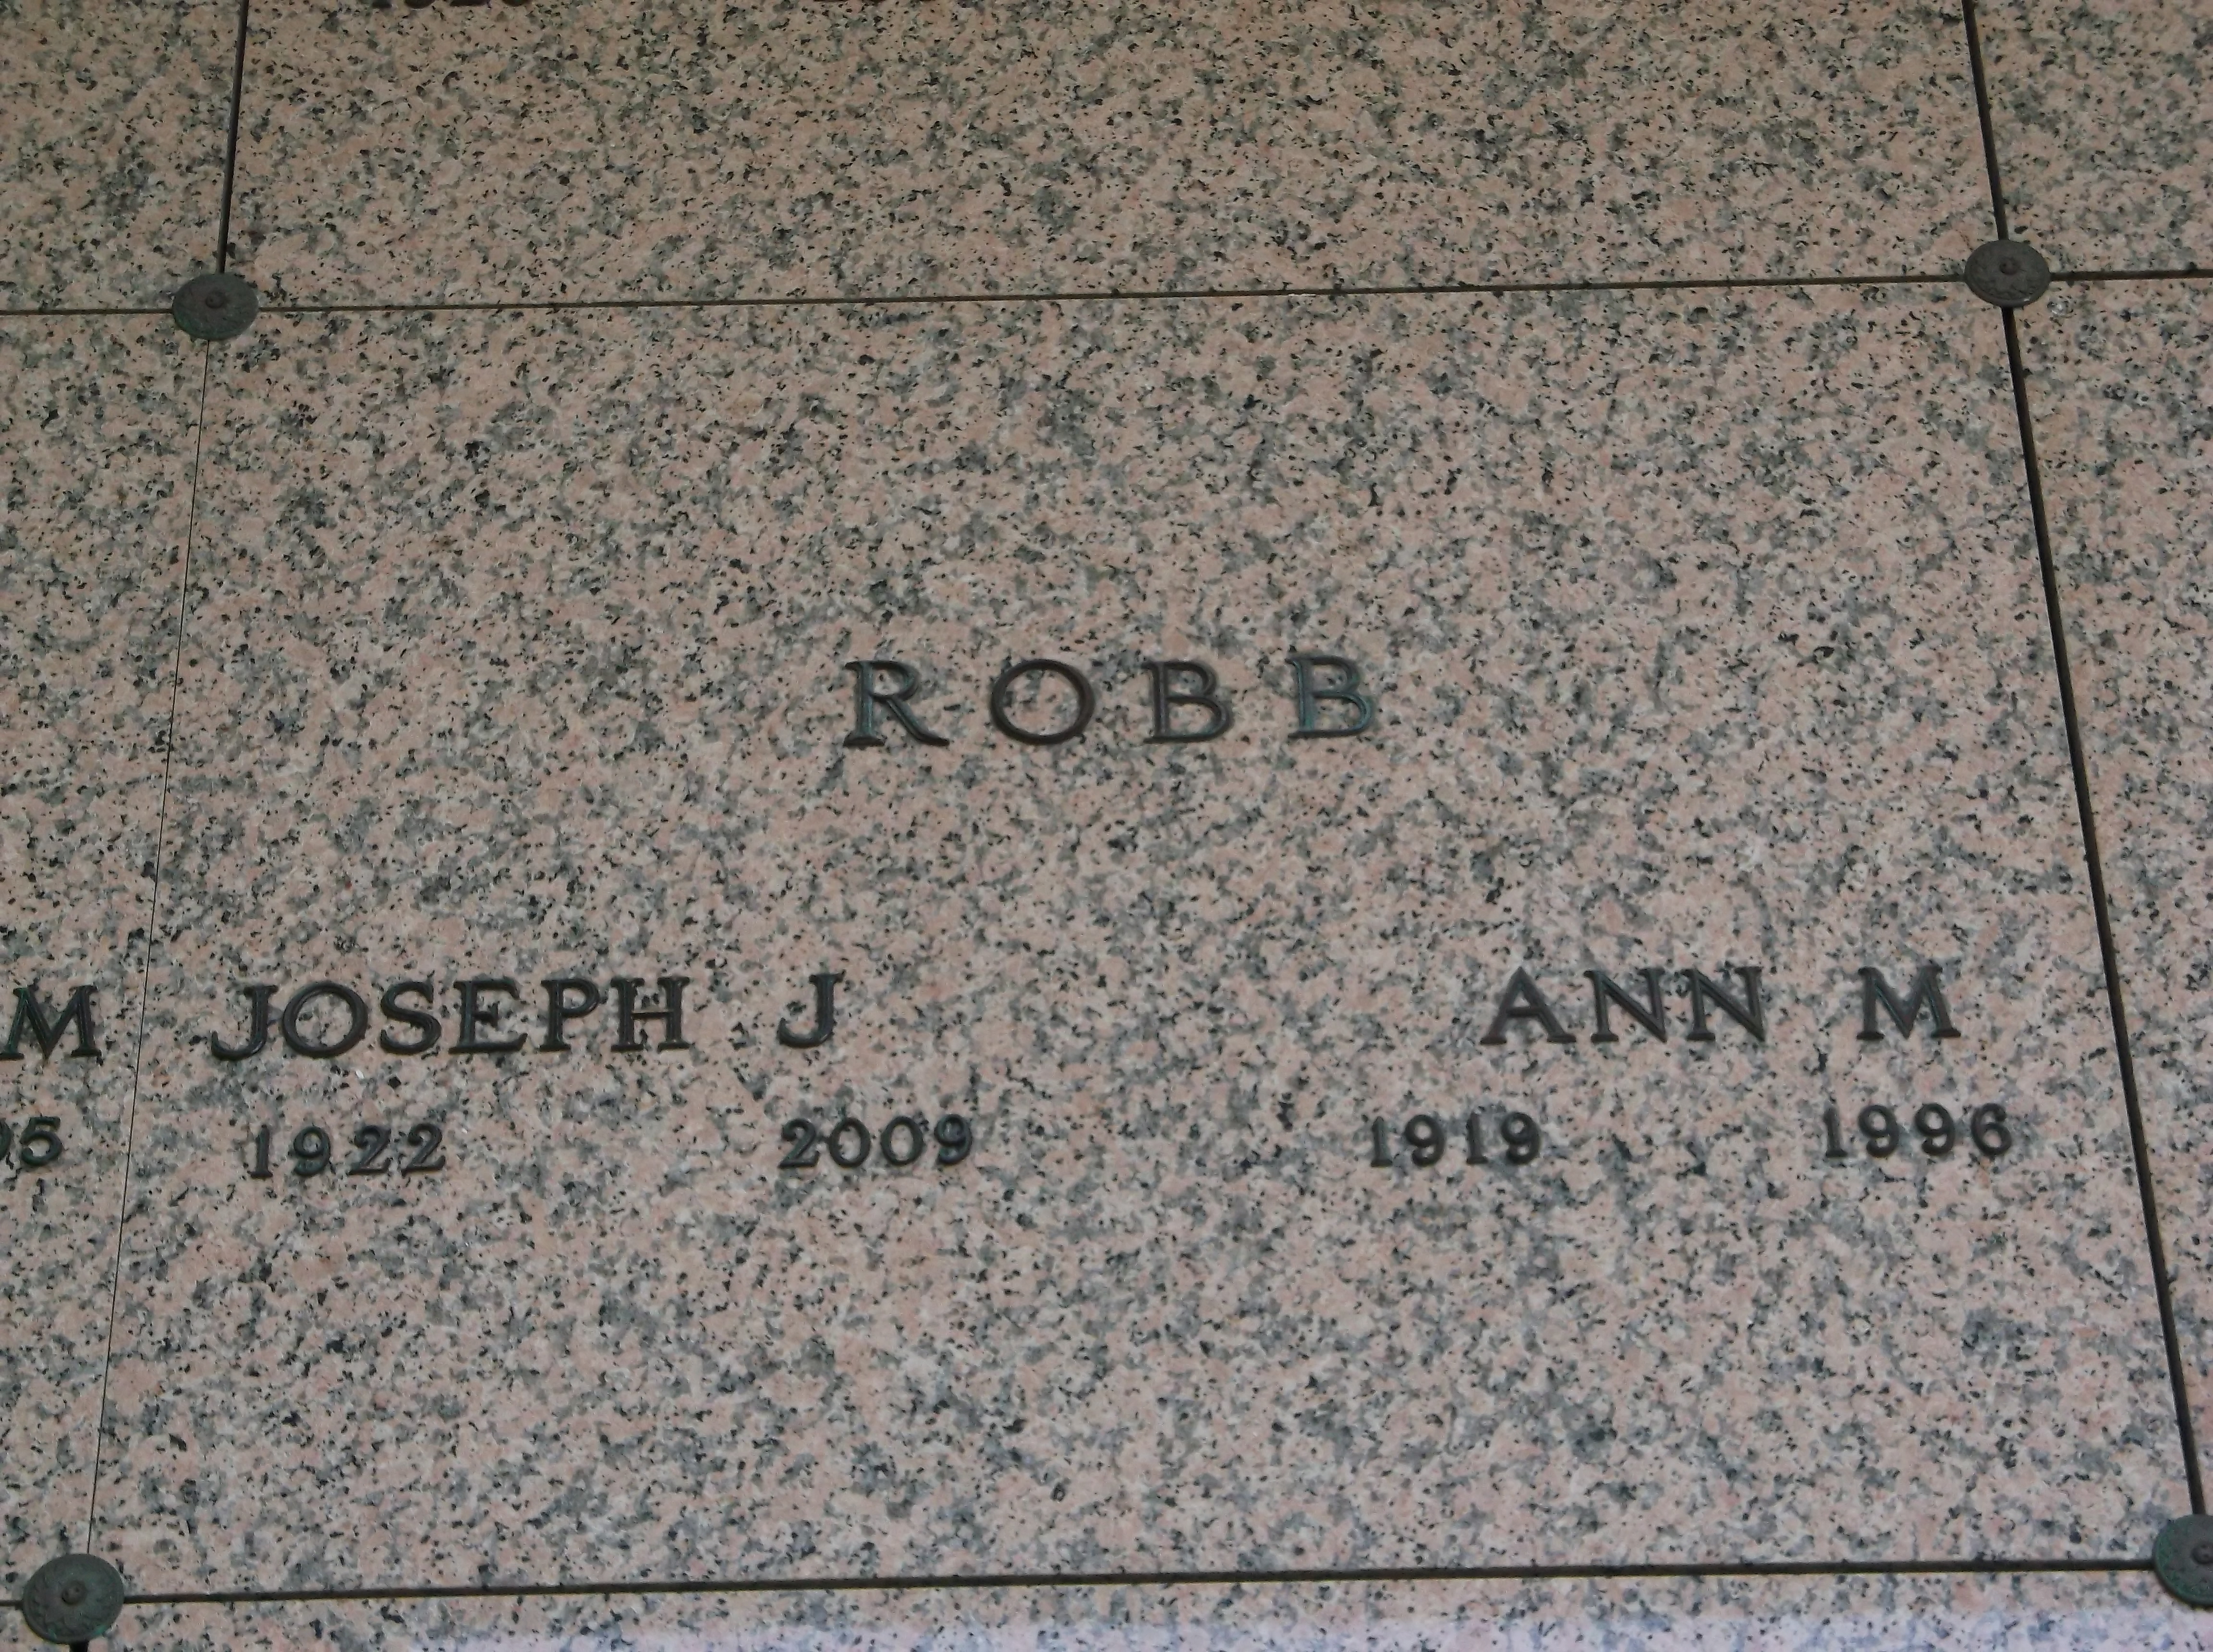 Ann M Robb